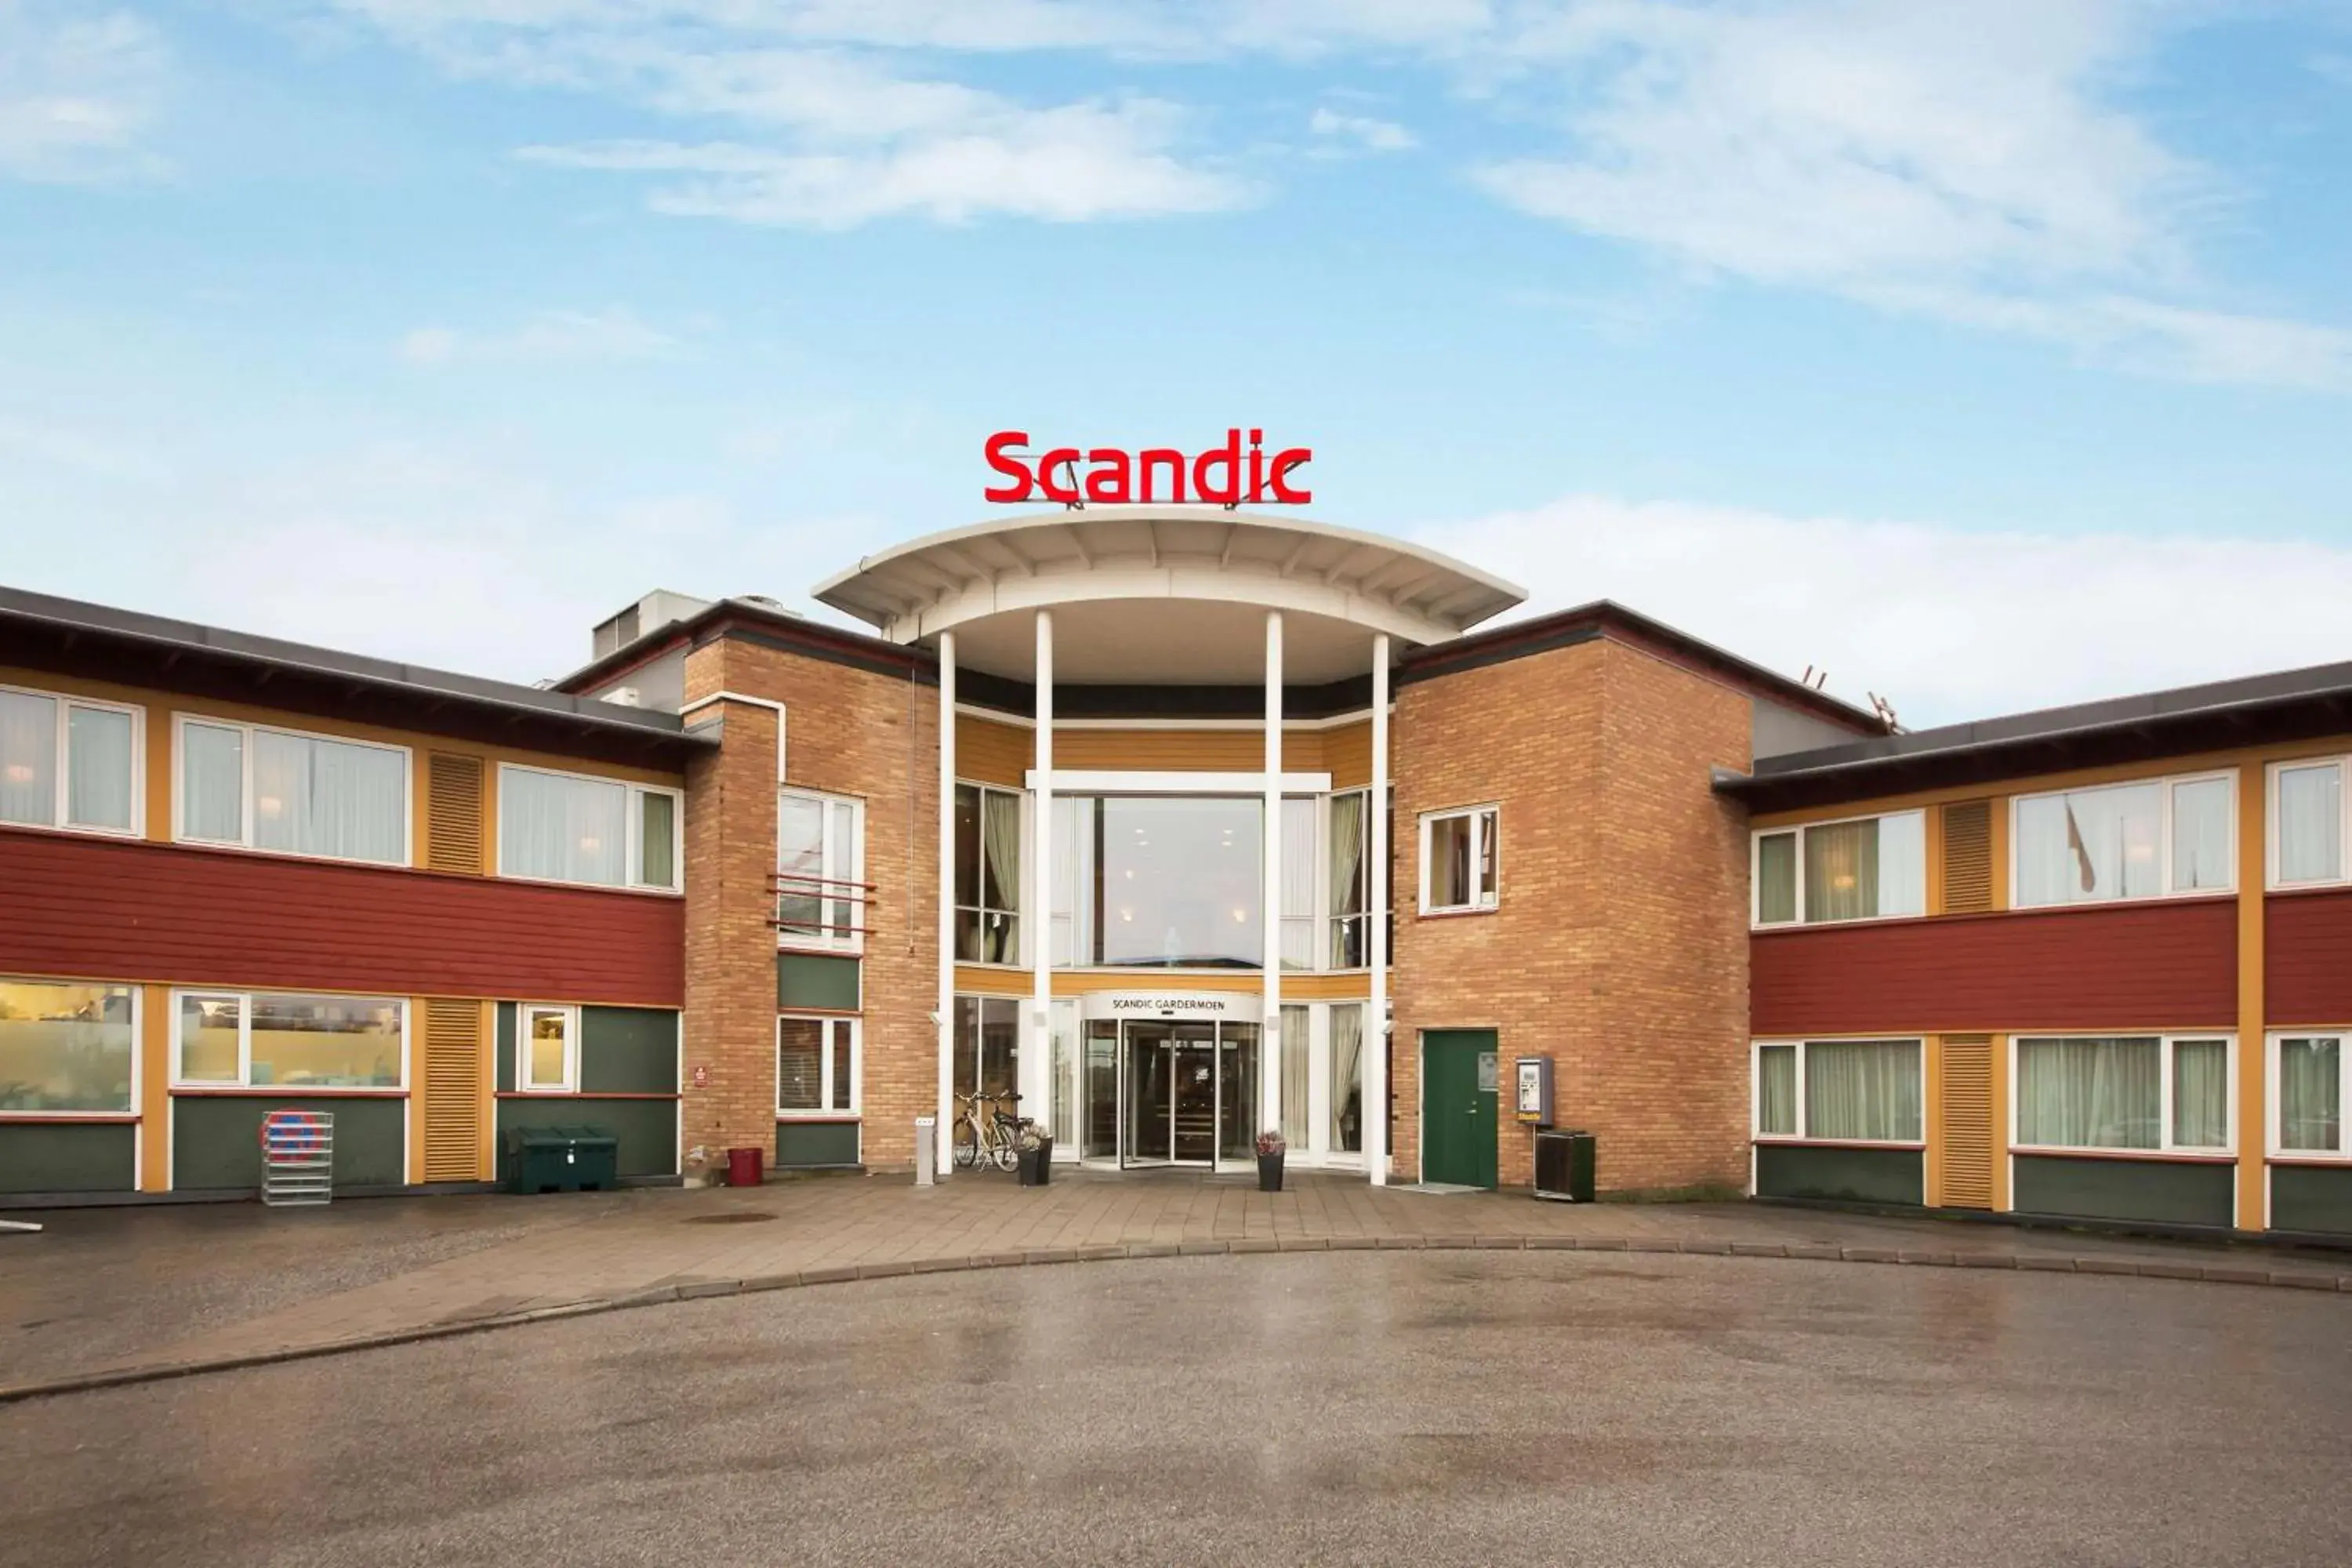 Property building in Scandic Gardermoen